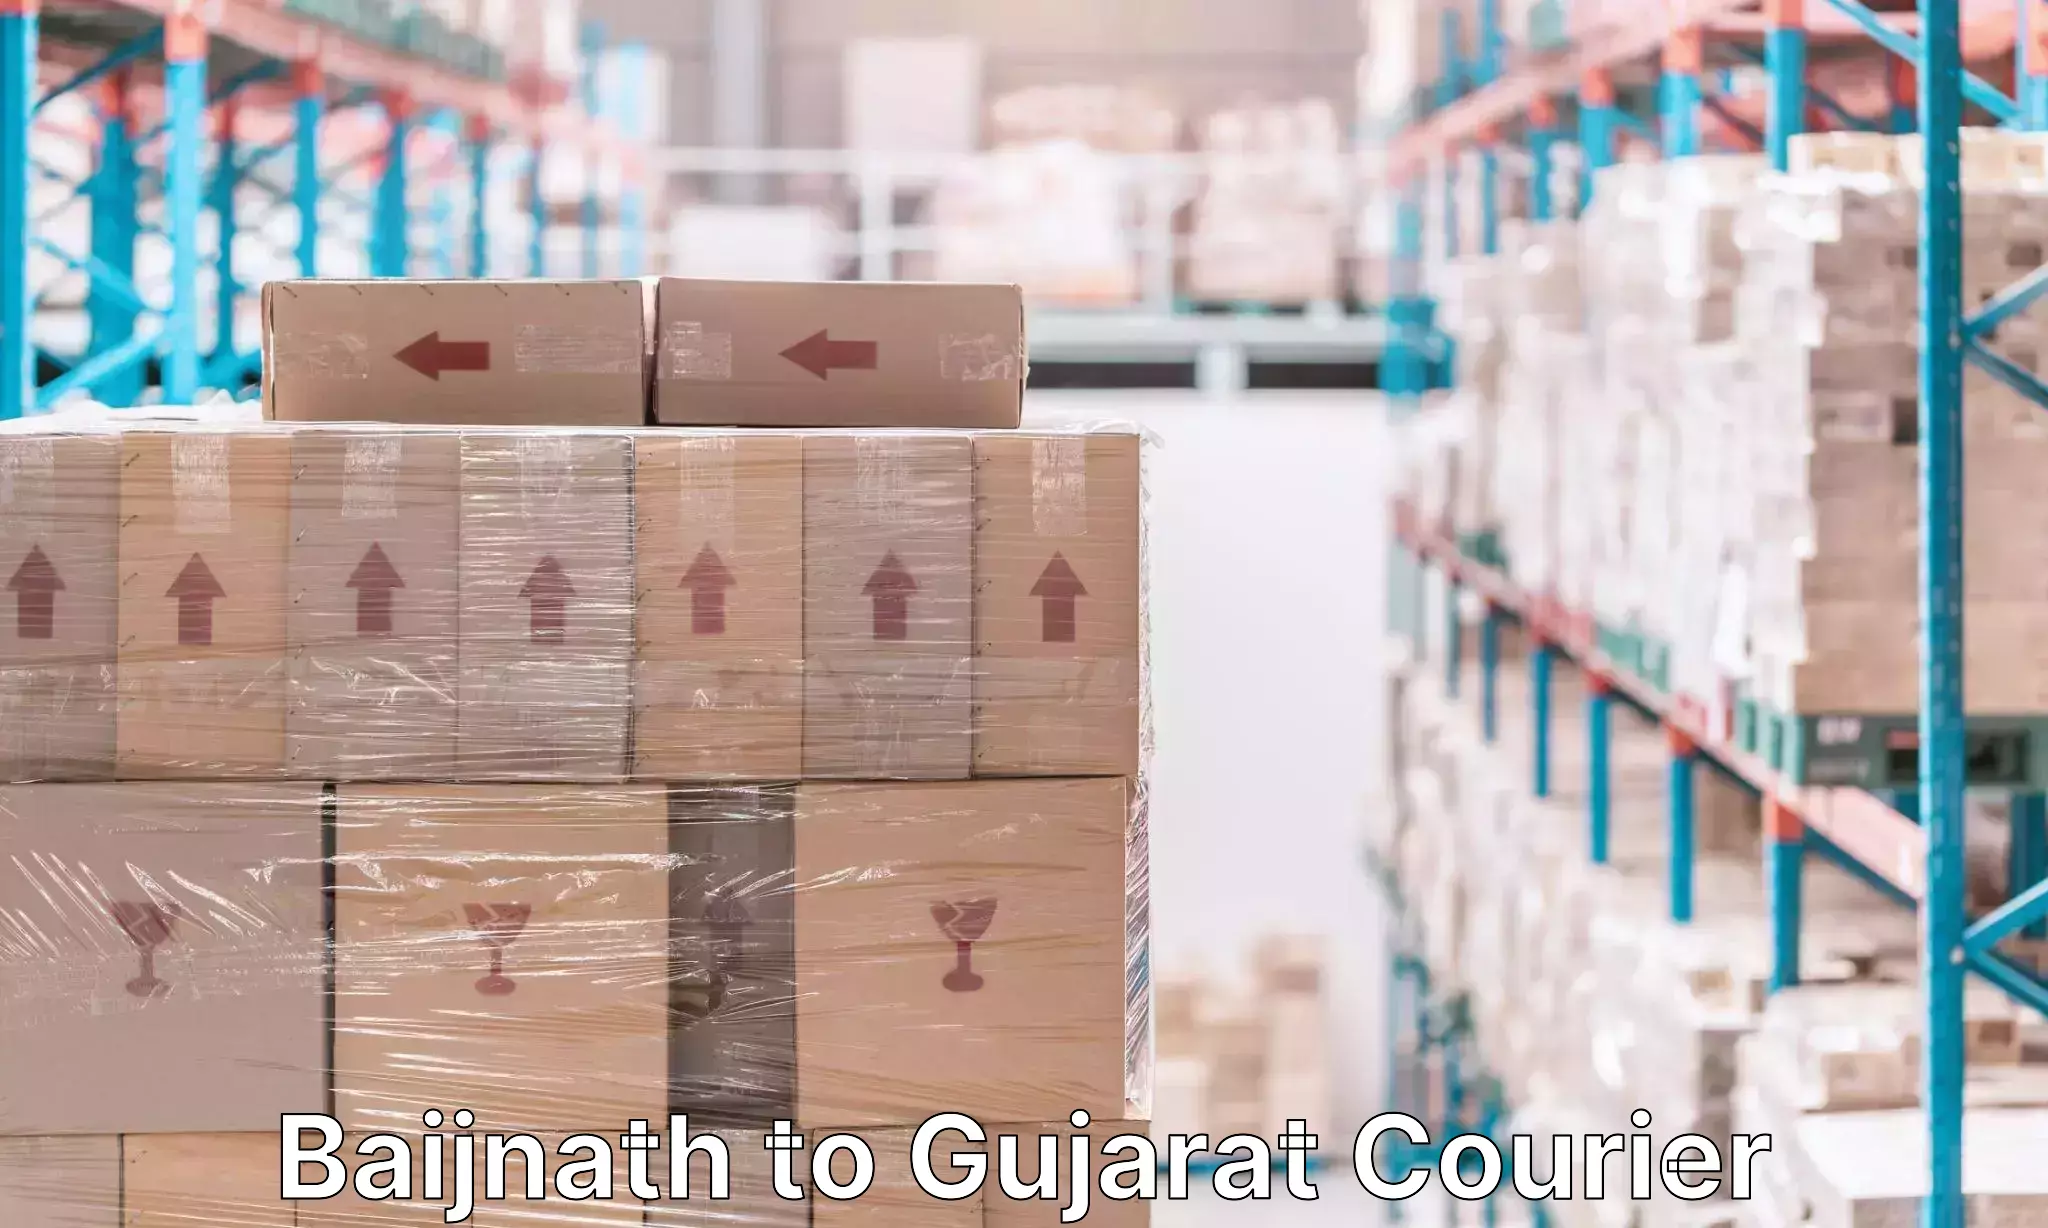 Luggage transit service Baijnath to Gujarat